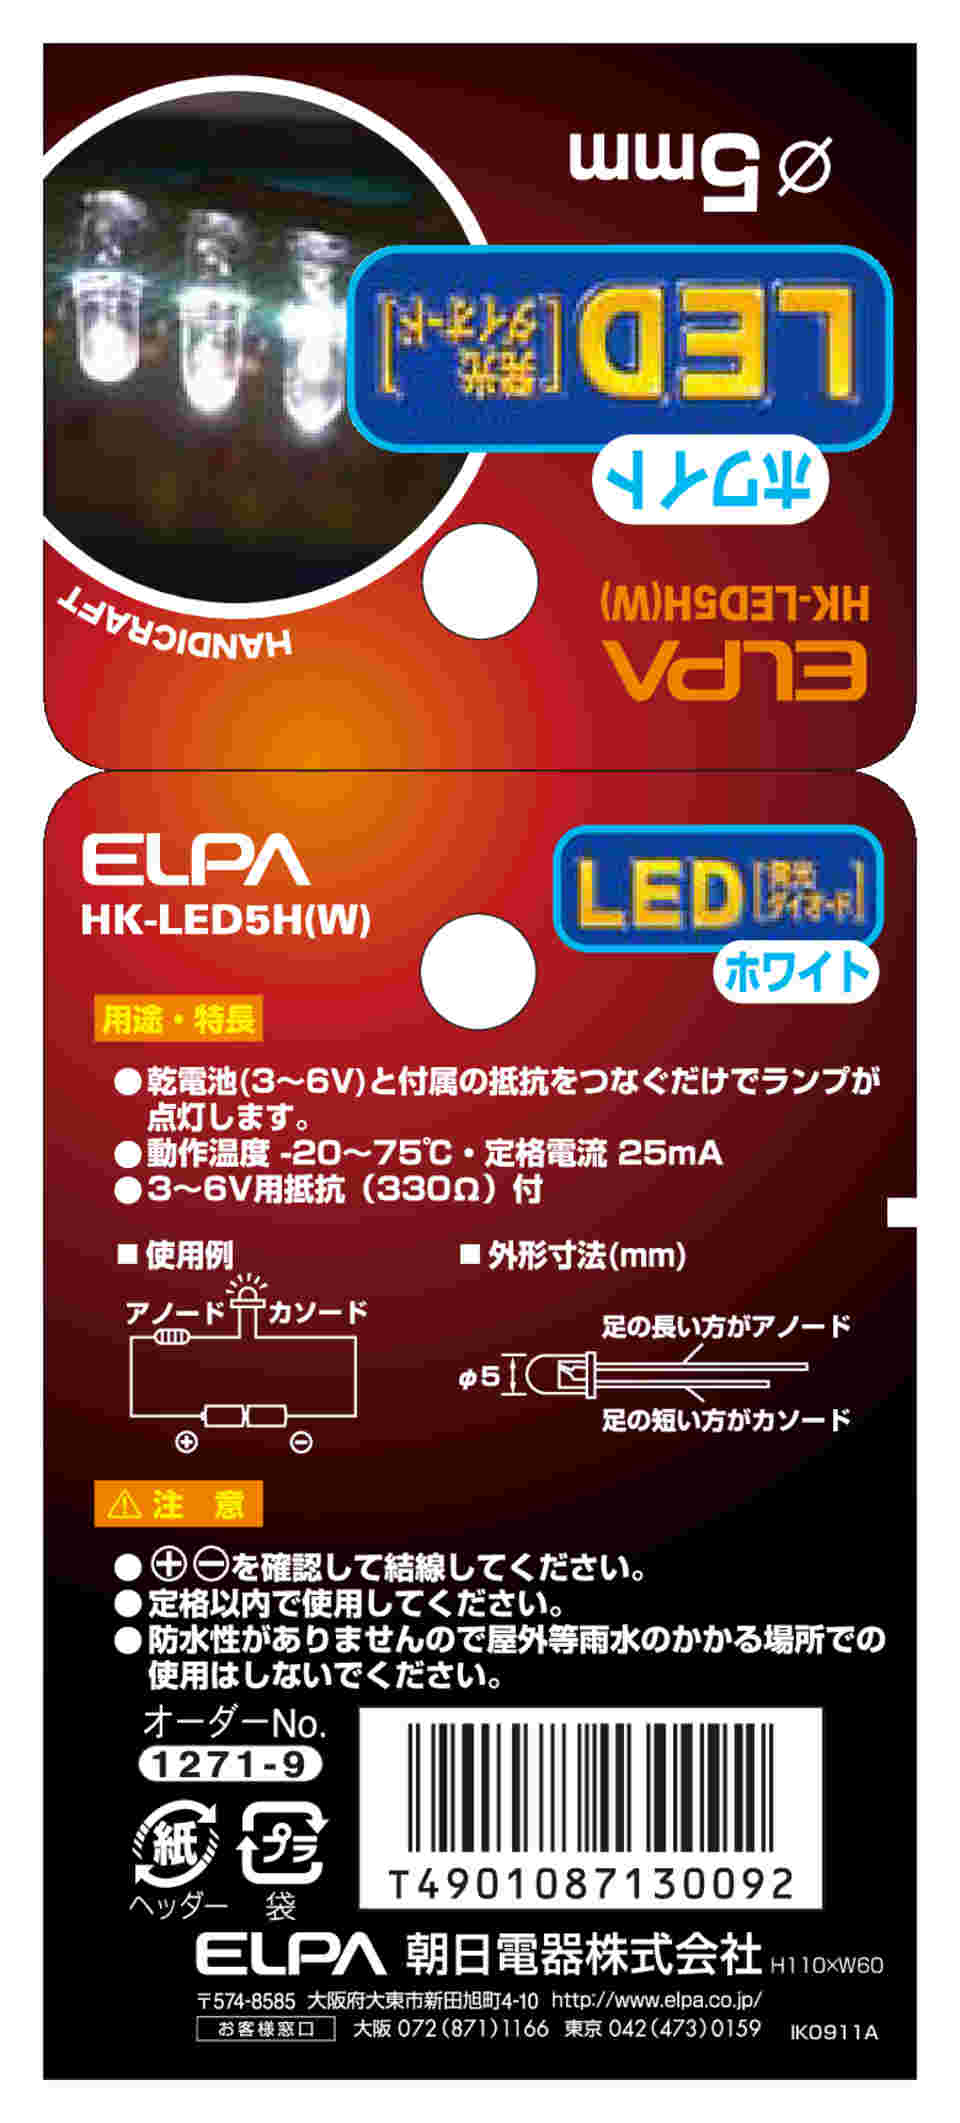 別倉庫からの配送 朝日電器 ELPA HK-LEDCT5H-R R コード付LEDΦ5mm赤点滅 HKLEDCT5HR